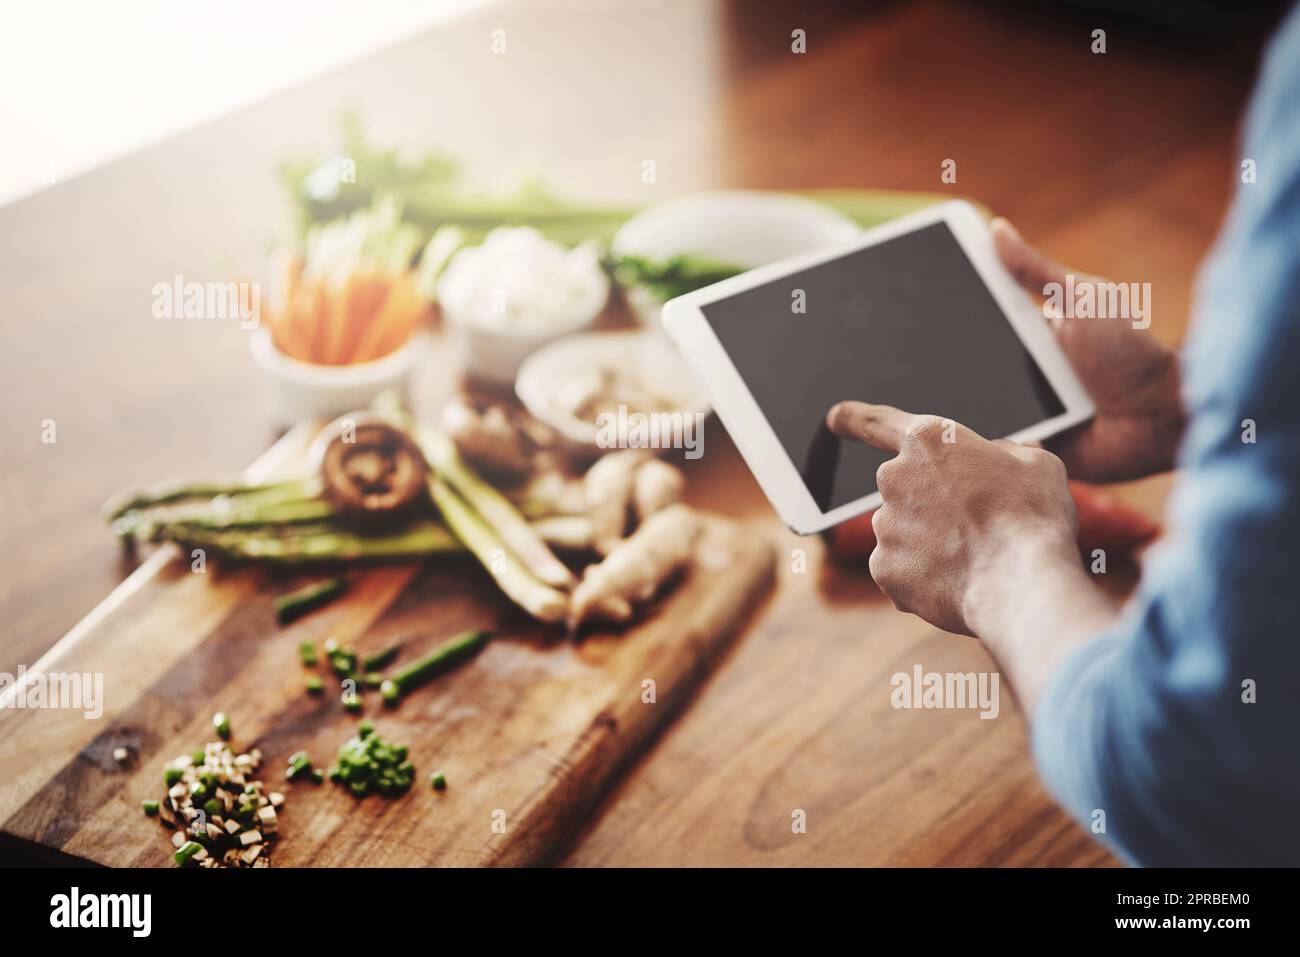 Primer plano de las manos del hombre sosteniendo una tableta para investigar recetas saludables, ver videos tutoriales de cocina y desplazarse en línea para ideas de comidas mientras prepara la cena, el almuerzo o el desayuno. Hombre navegando en la aplicación Foto de stock